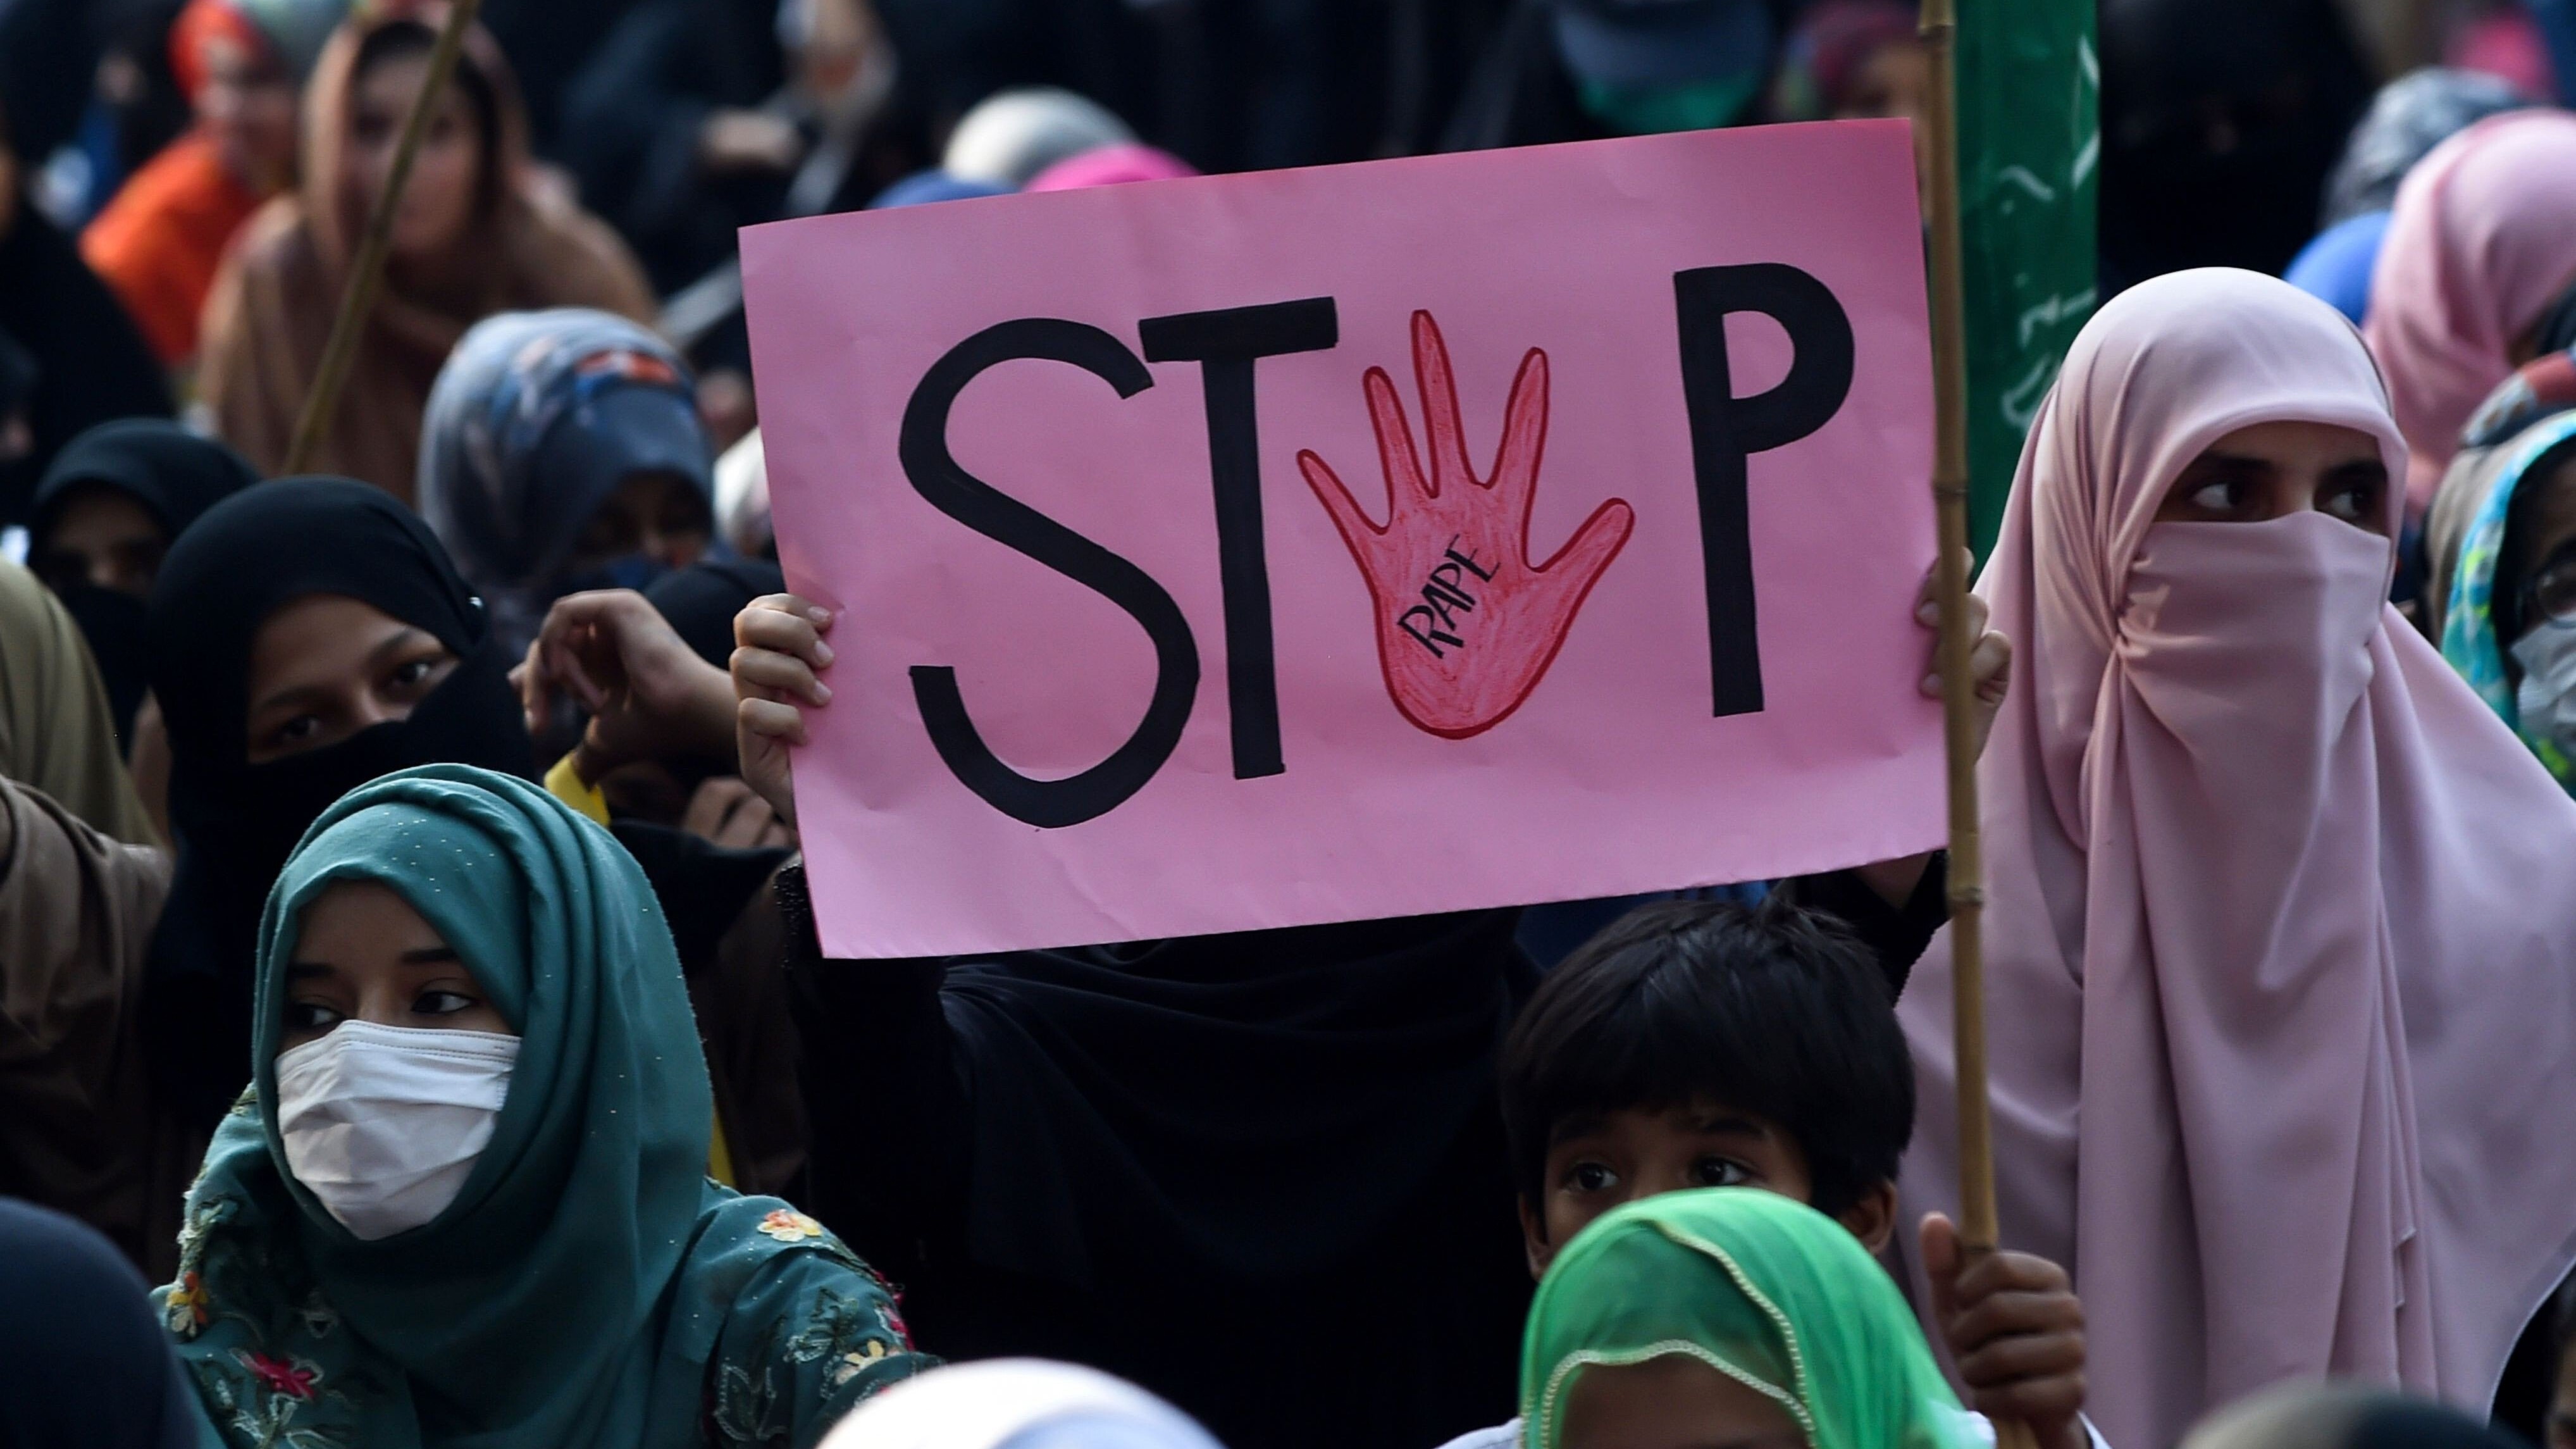 حراك نسائي في لاهور ضد الاغتصاب الجماعي بعدما تعدد الحوادث في هذا الإطار